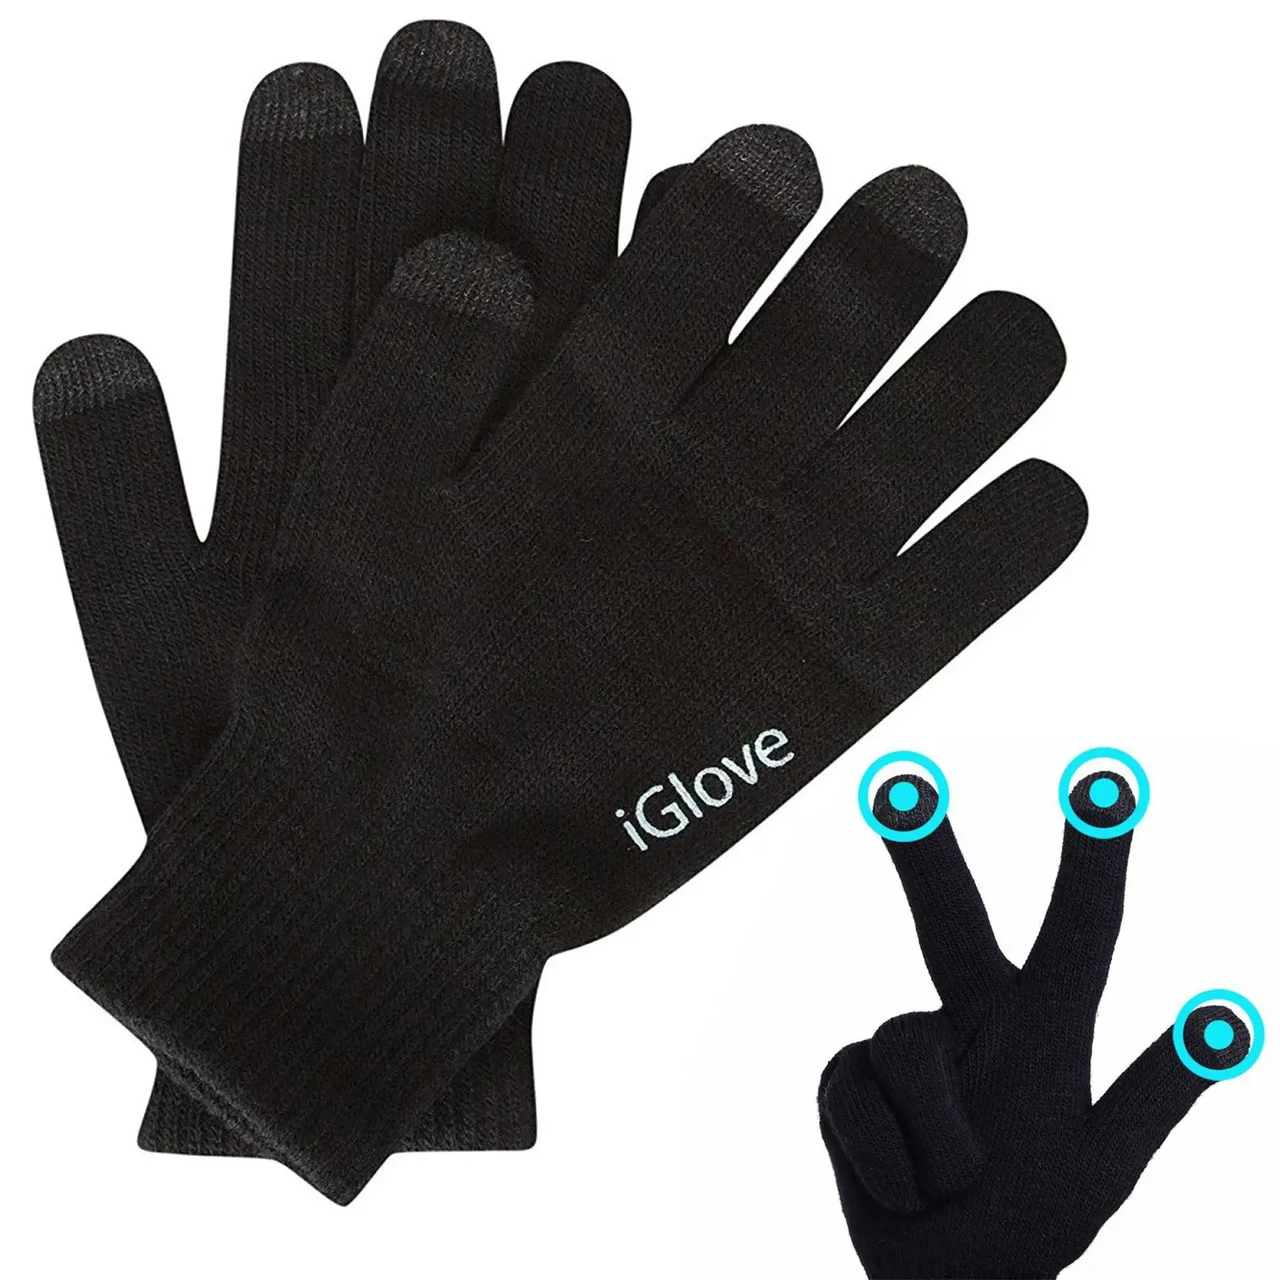 Рукавички з сенсорними пальцями iGloves / Зимові сенсорні рукавиці для телефона